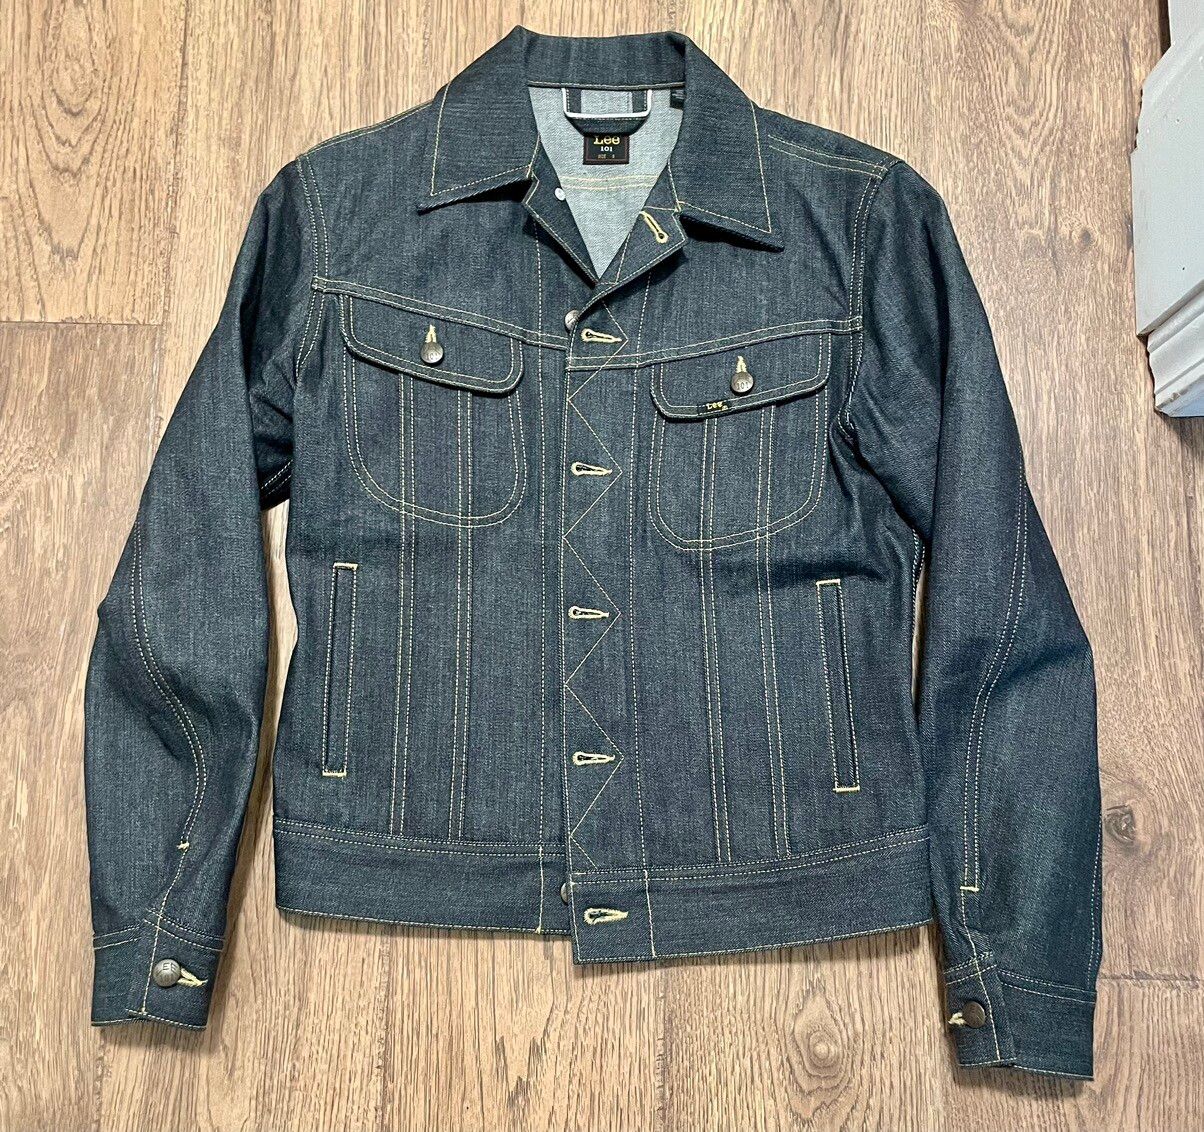 Lee Lee 101 Rider Jacket in Original Blue NWOT Small | Grailed